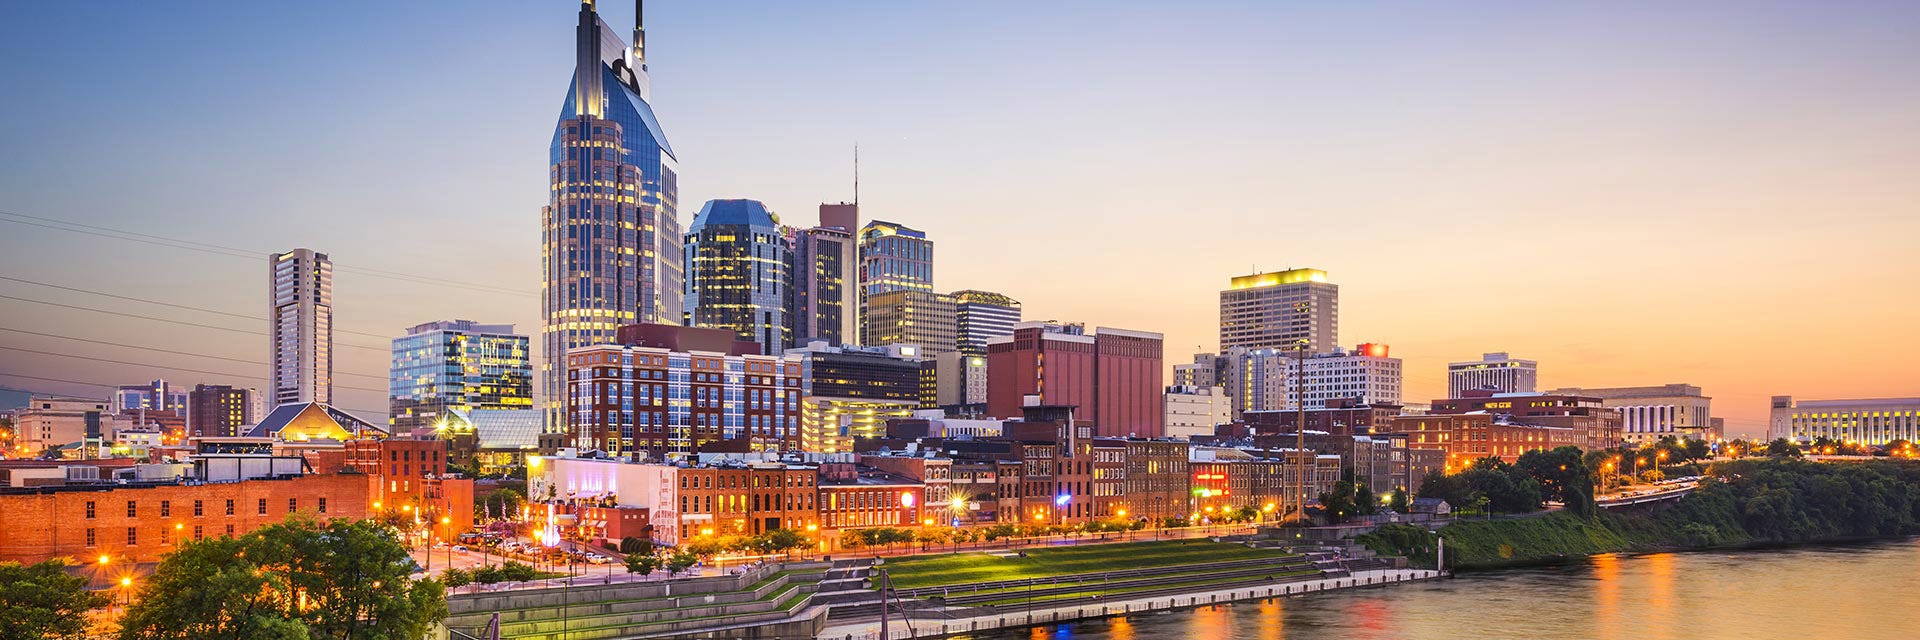 Nashville City Skyline Photo